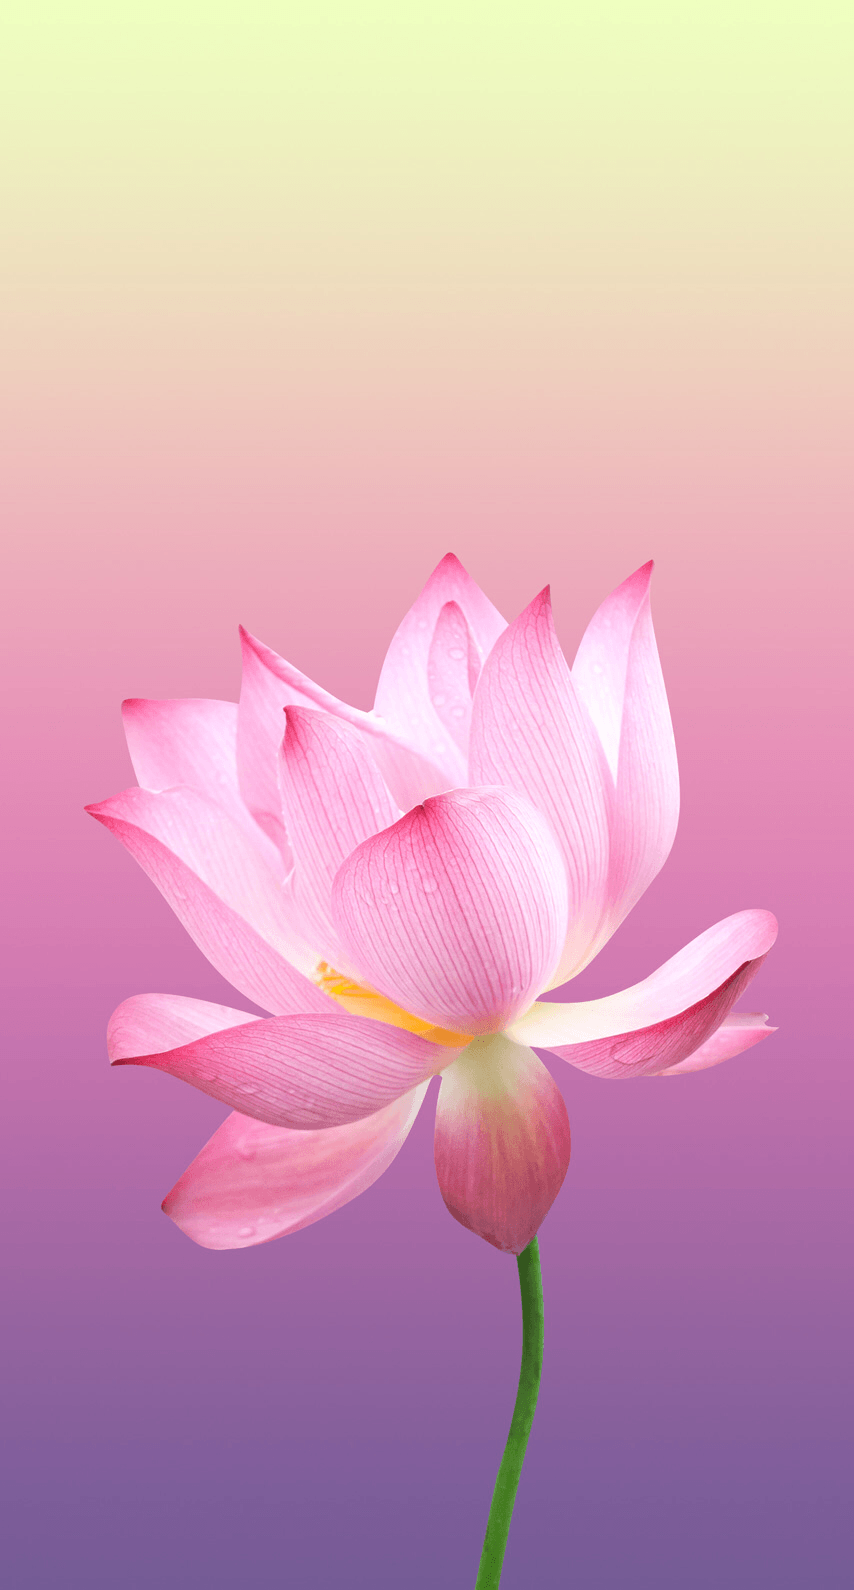 Bạn có ước mơ sở hữu một chiếc iPhone đẹp nhưng cũng không muốn bỏ qua vẻ đẹp của hoa sen? Hãy tìm thấy sự cân bằng giữa hai yêu cầu đó với những hình nền lotus đặc biệt này. Thiết kế độc đáo và hình ảnh chất lượng HD sẽ khiến cho màn hình của bạn thật sự nổi bật.